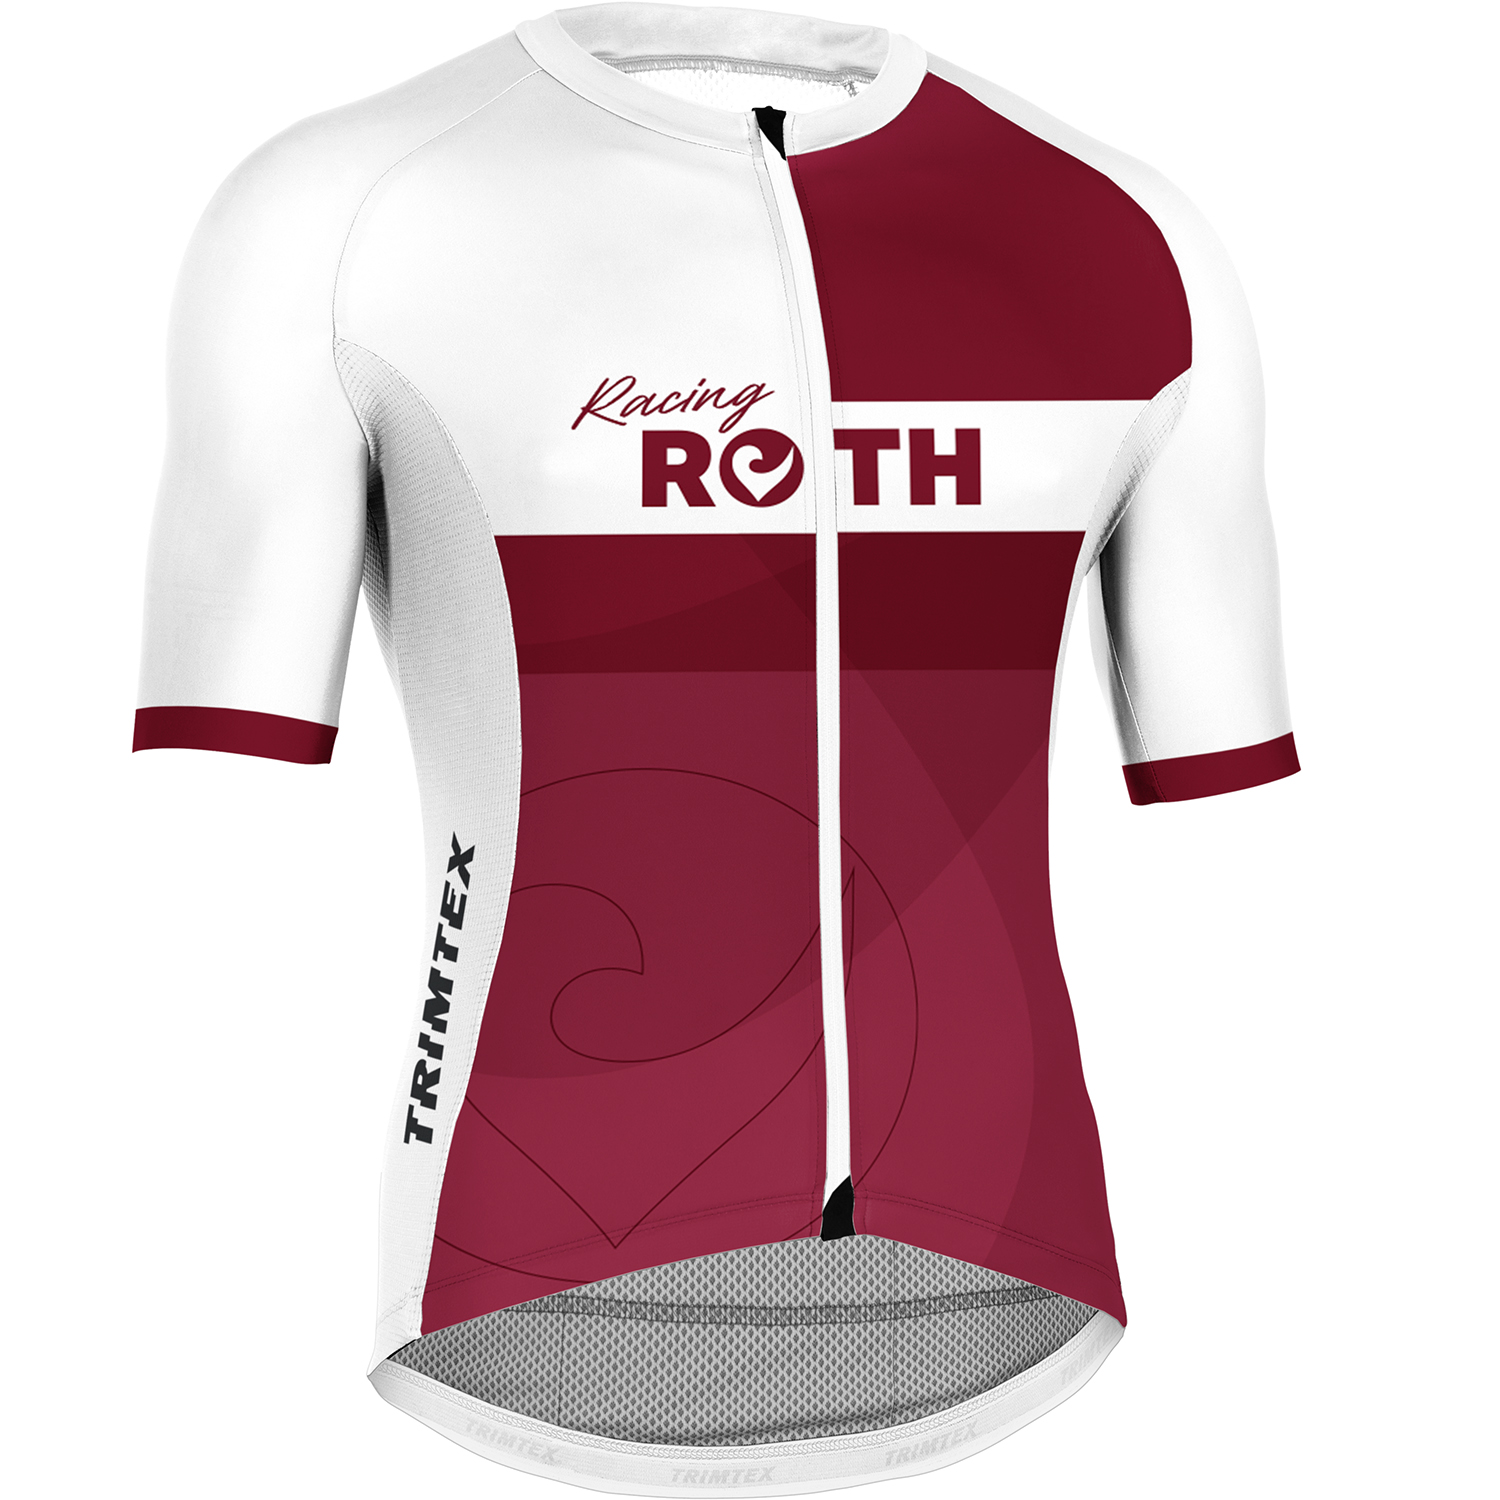 Cycling Shirt Vitric 2.0 RACING ROTH